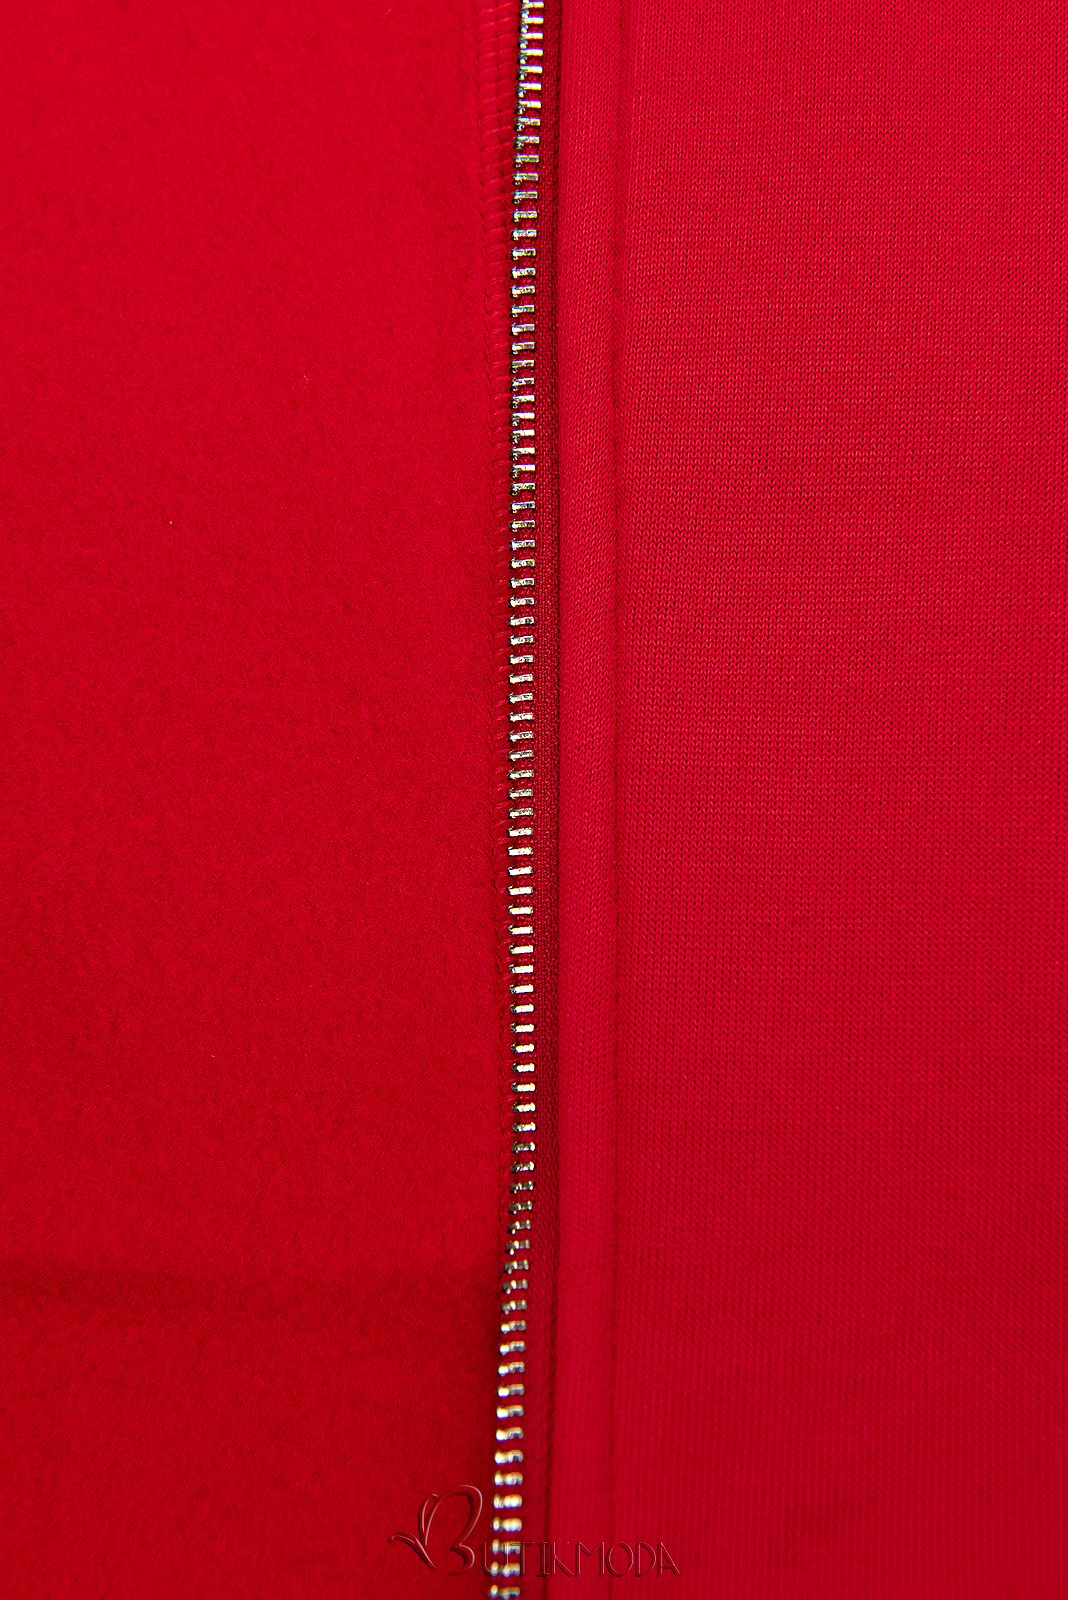 Sweatmantel in langer Form mit Kapuze rot